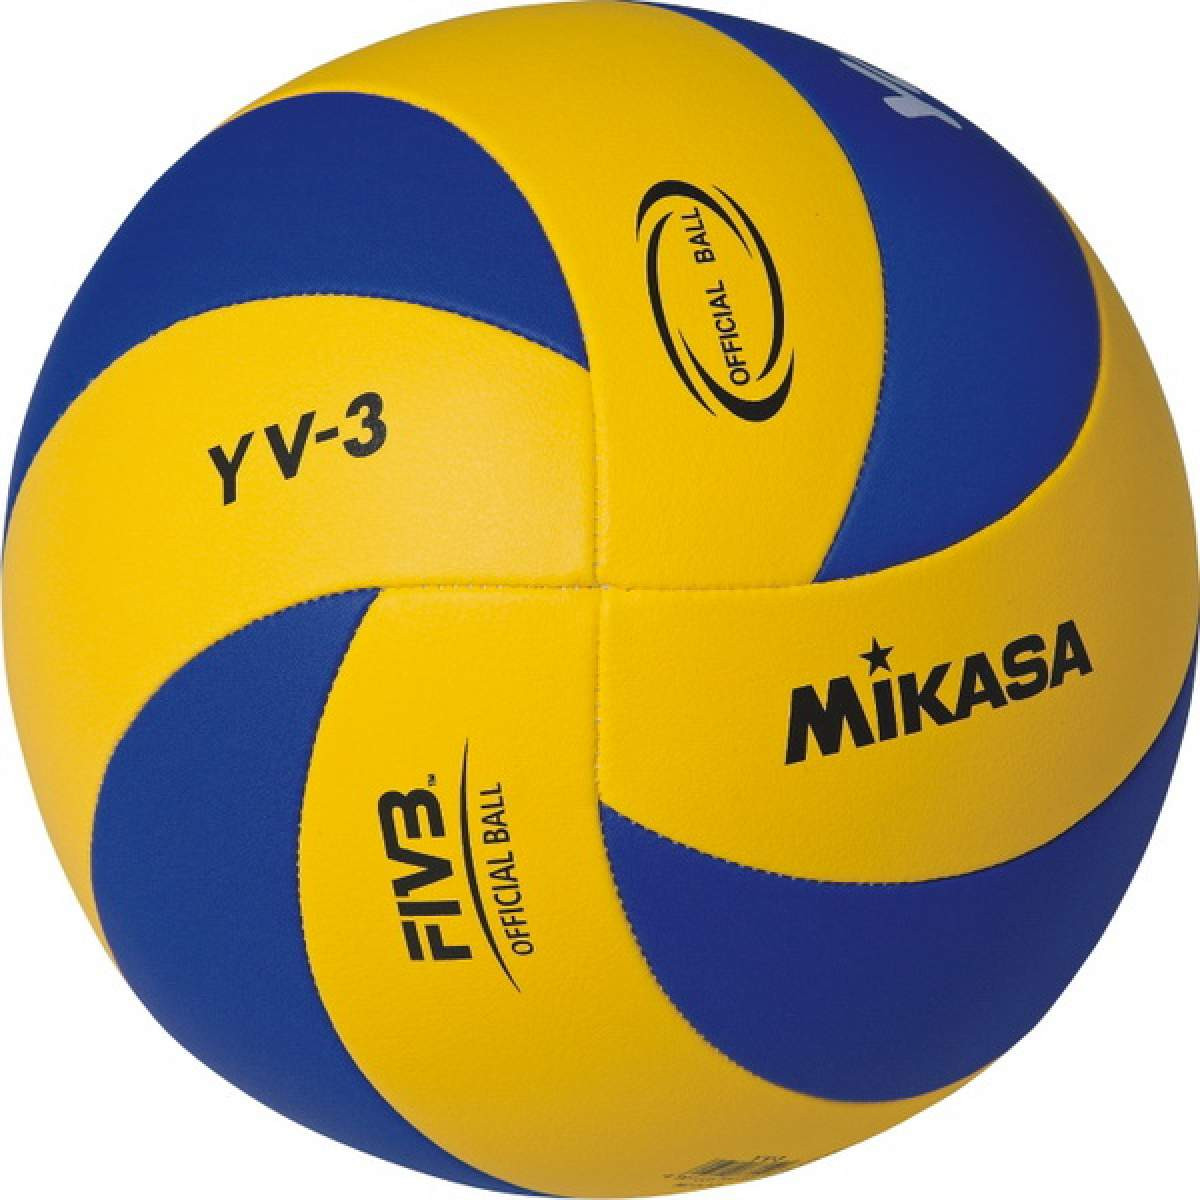 Юніорський волейбольний м'яч Mikasa YV-3, полегшений (ORIGINAL)